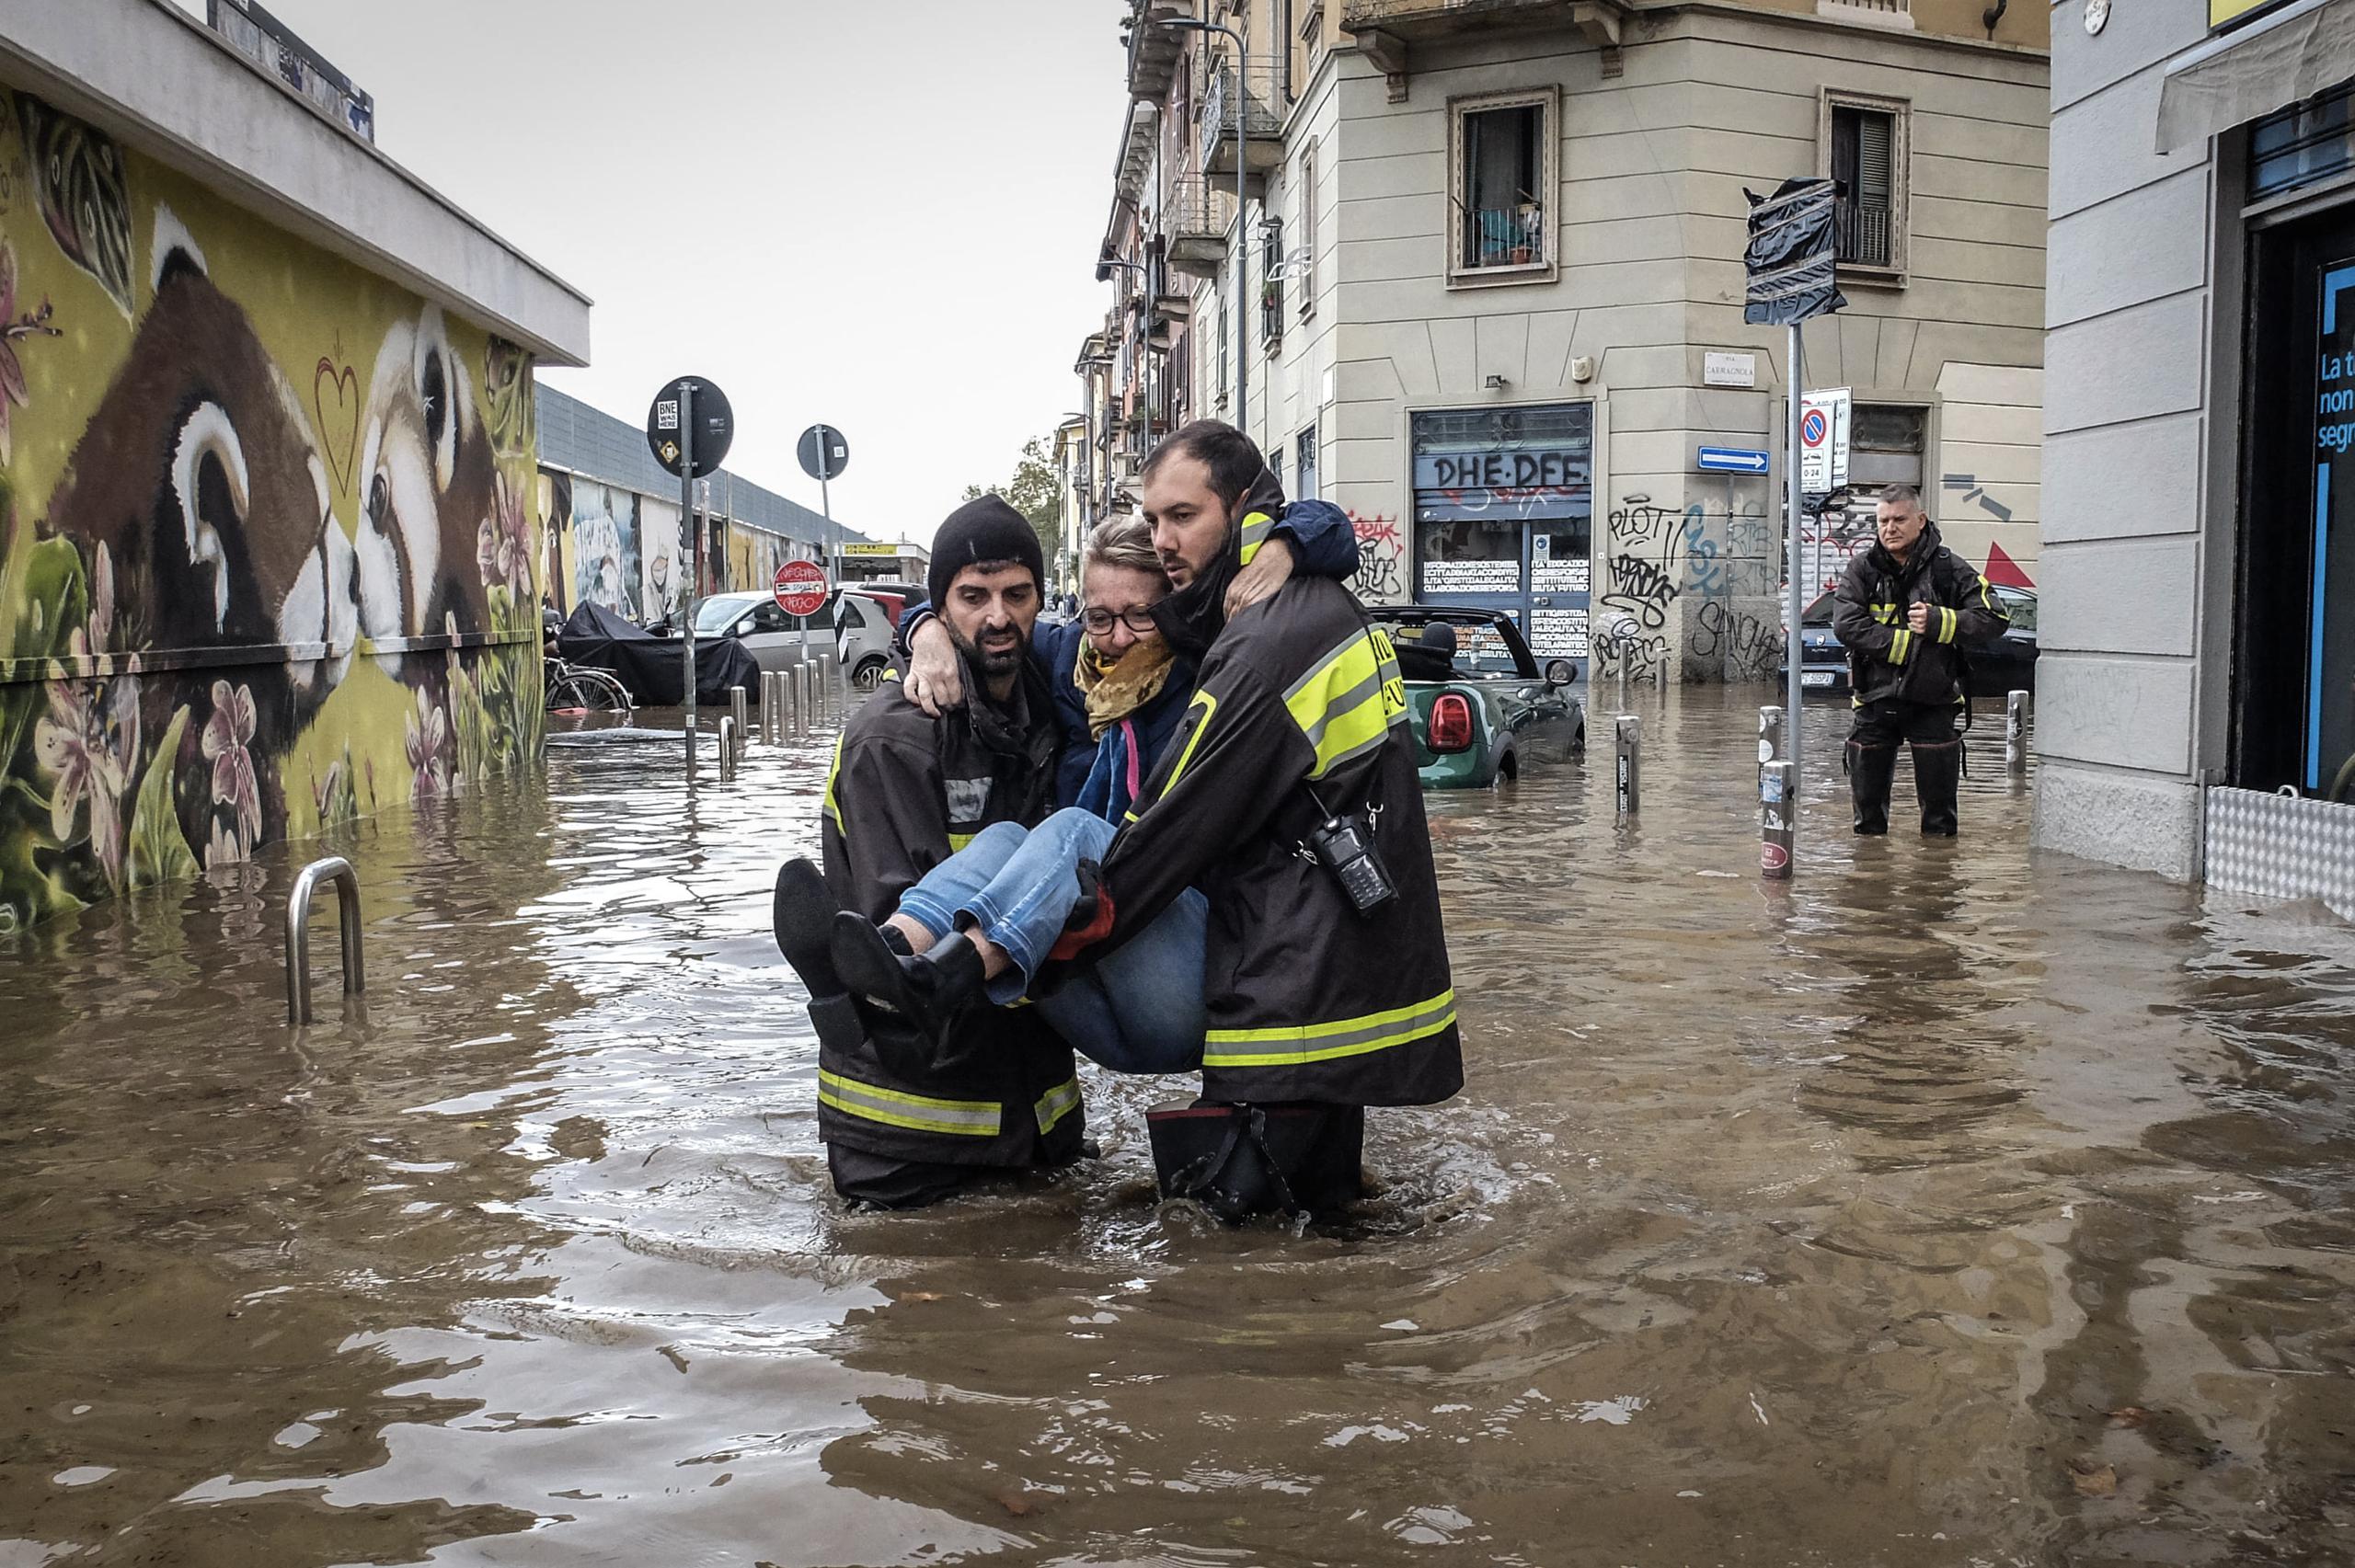 Los trabajadores de emergencia llevan a una mujer en medio de inundaciones en una calle, después de que una tormenta causó el desbordamiento del río Seveso, en el distrito de Isola, en Milán, Italia. EFE/MATTEO CORNER
